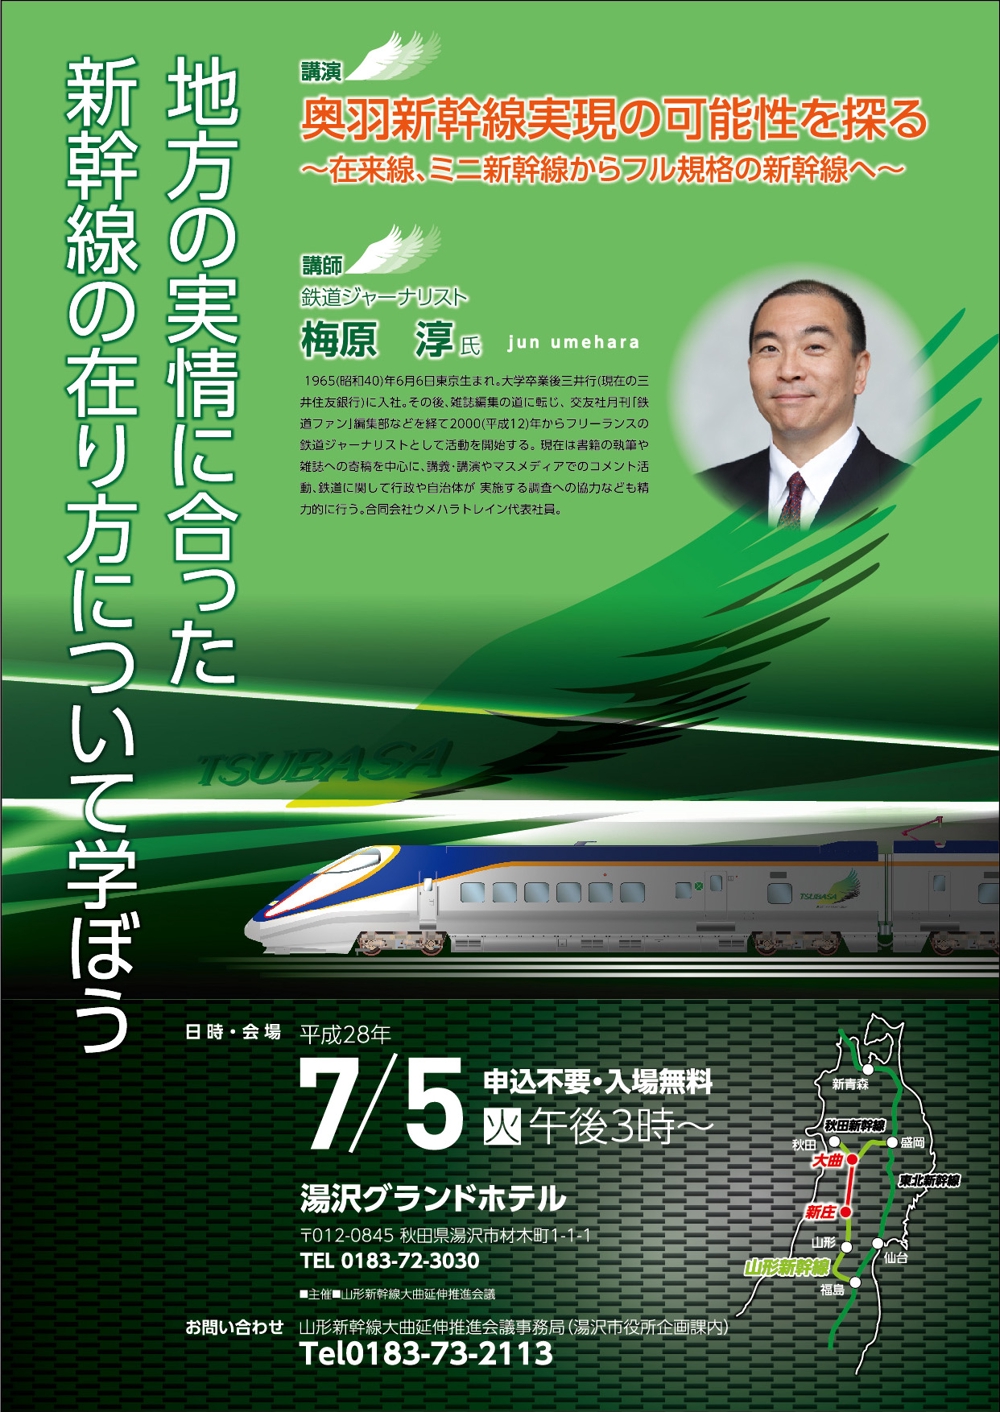 新幹線A4_B.jpg